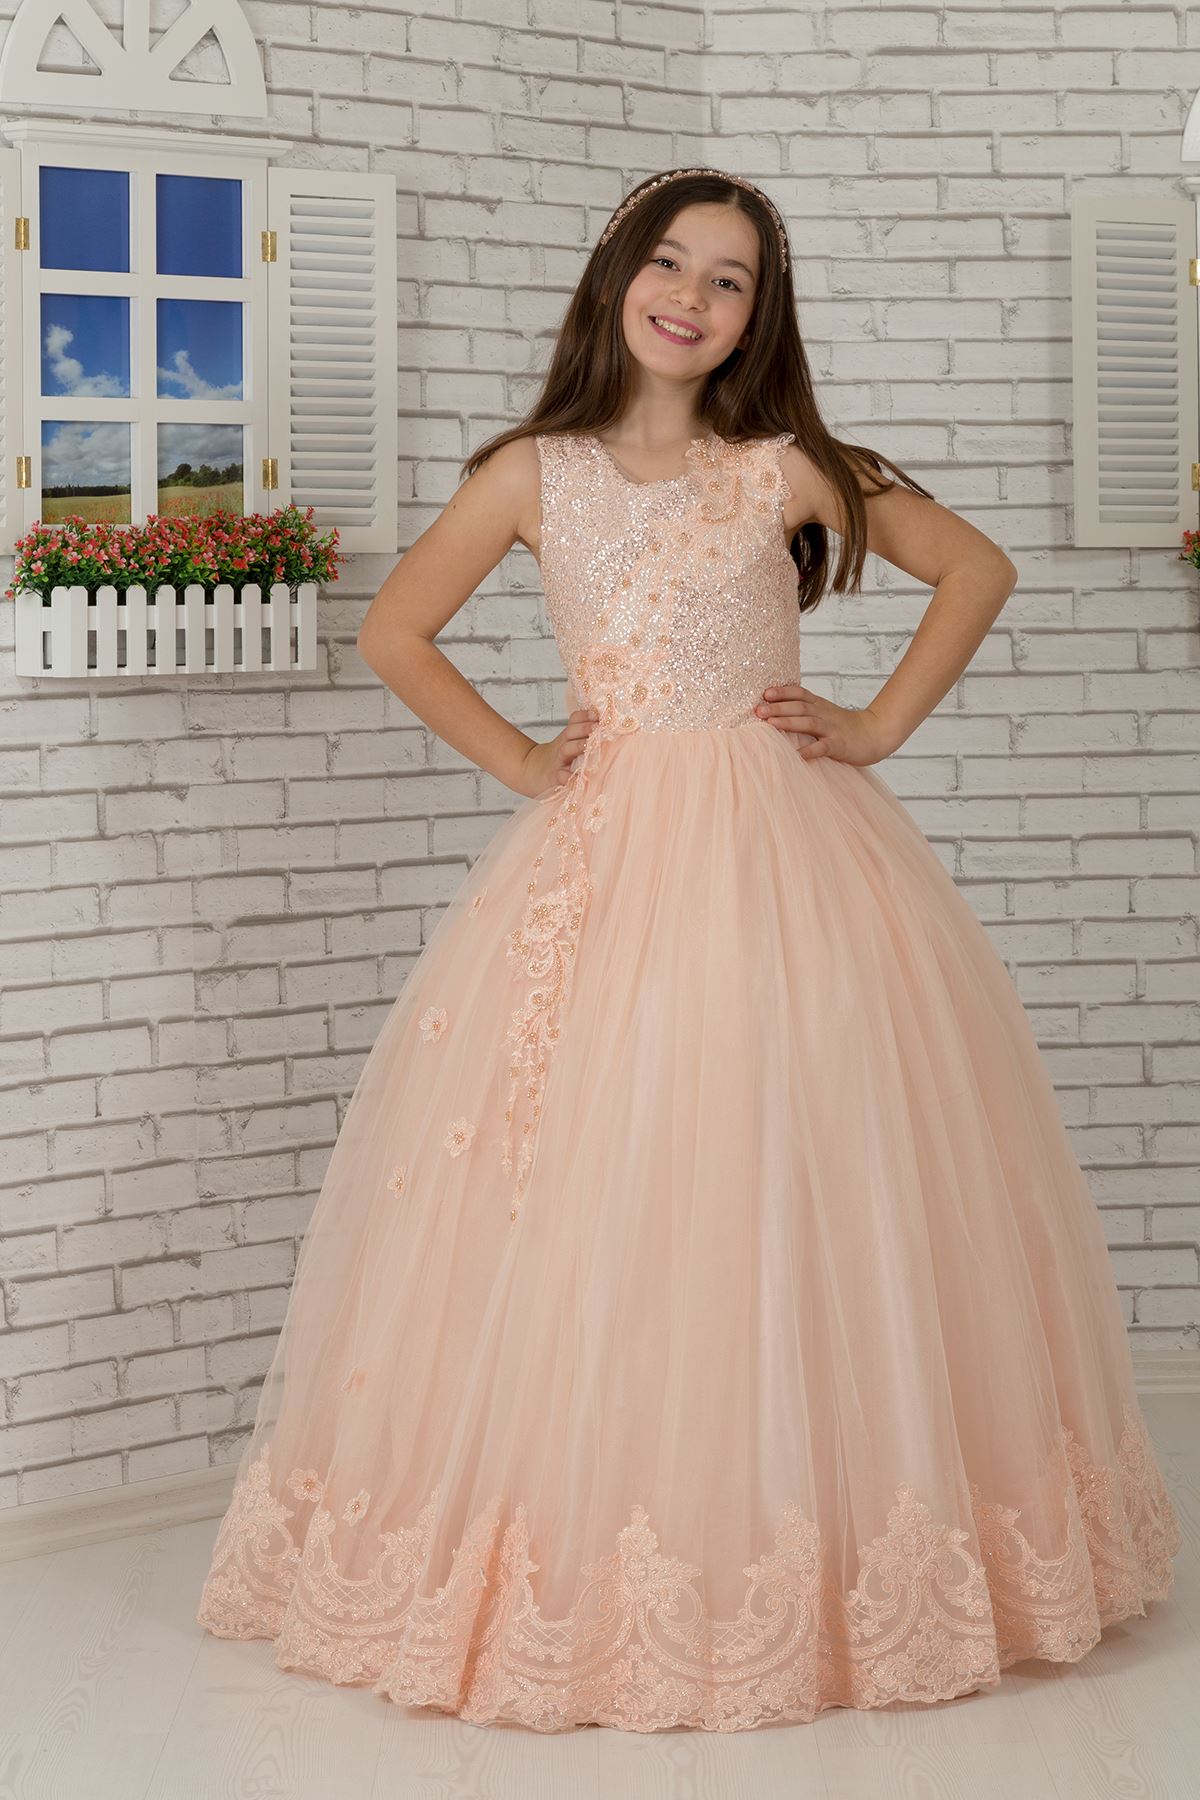 Specjalne cekinowe body, wyszywana aplikacja, wyszczególniony dół Fluffy Girl's Evening Dress 600 Salmon